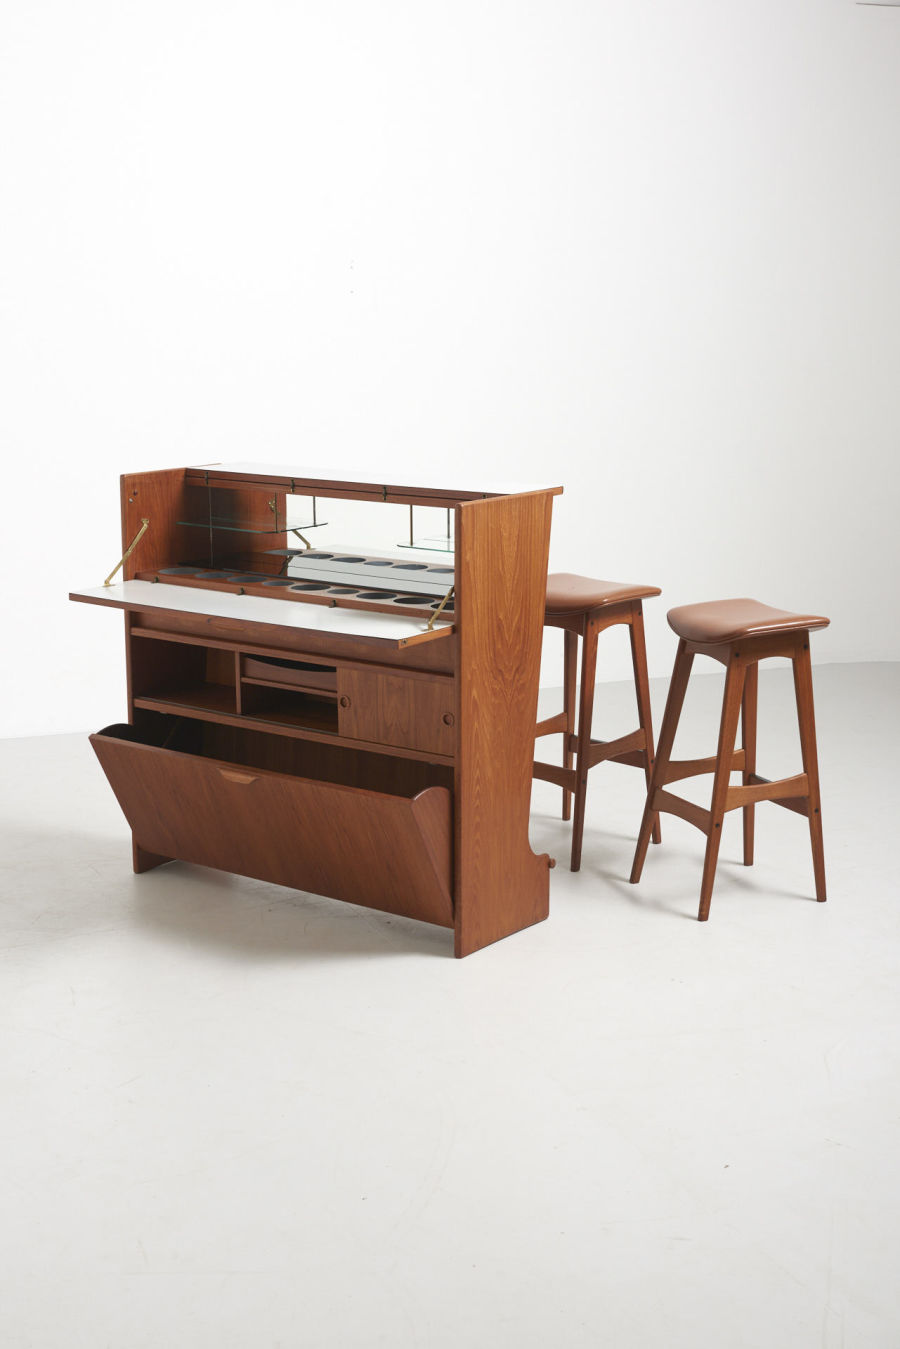 modestfurniture-vintage-2672-johannes-andersen-bar-cabinet-sk661-bar-stools06